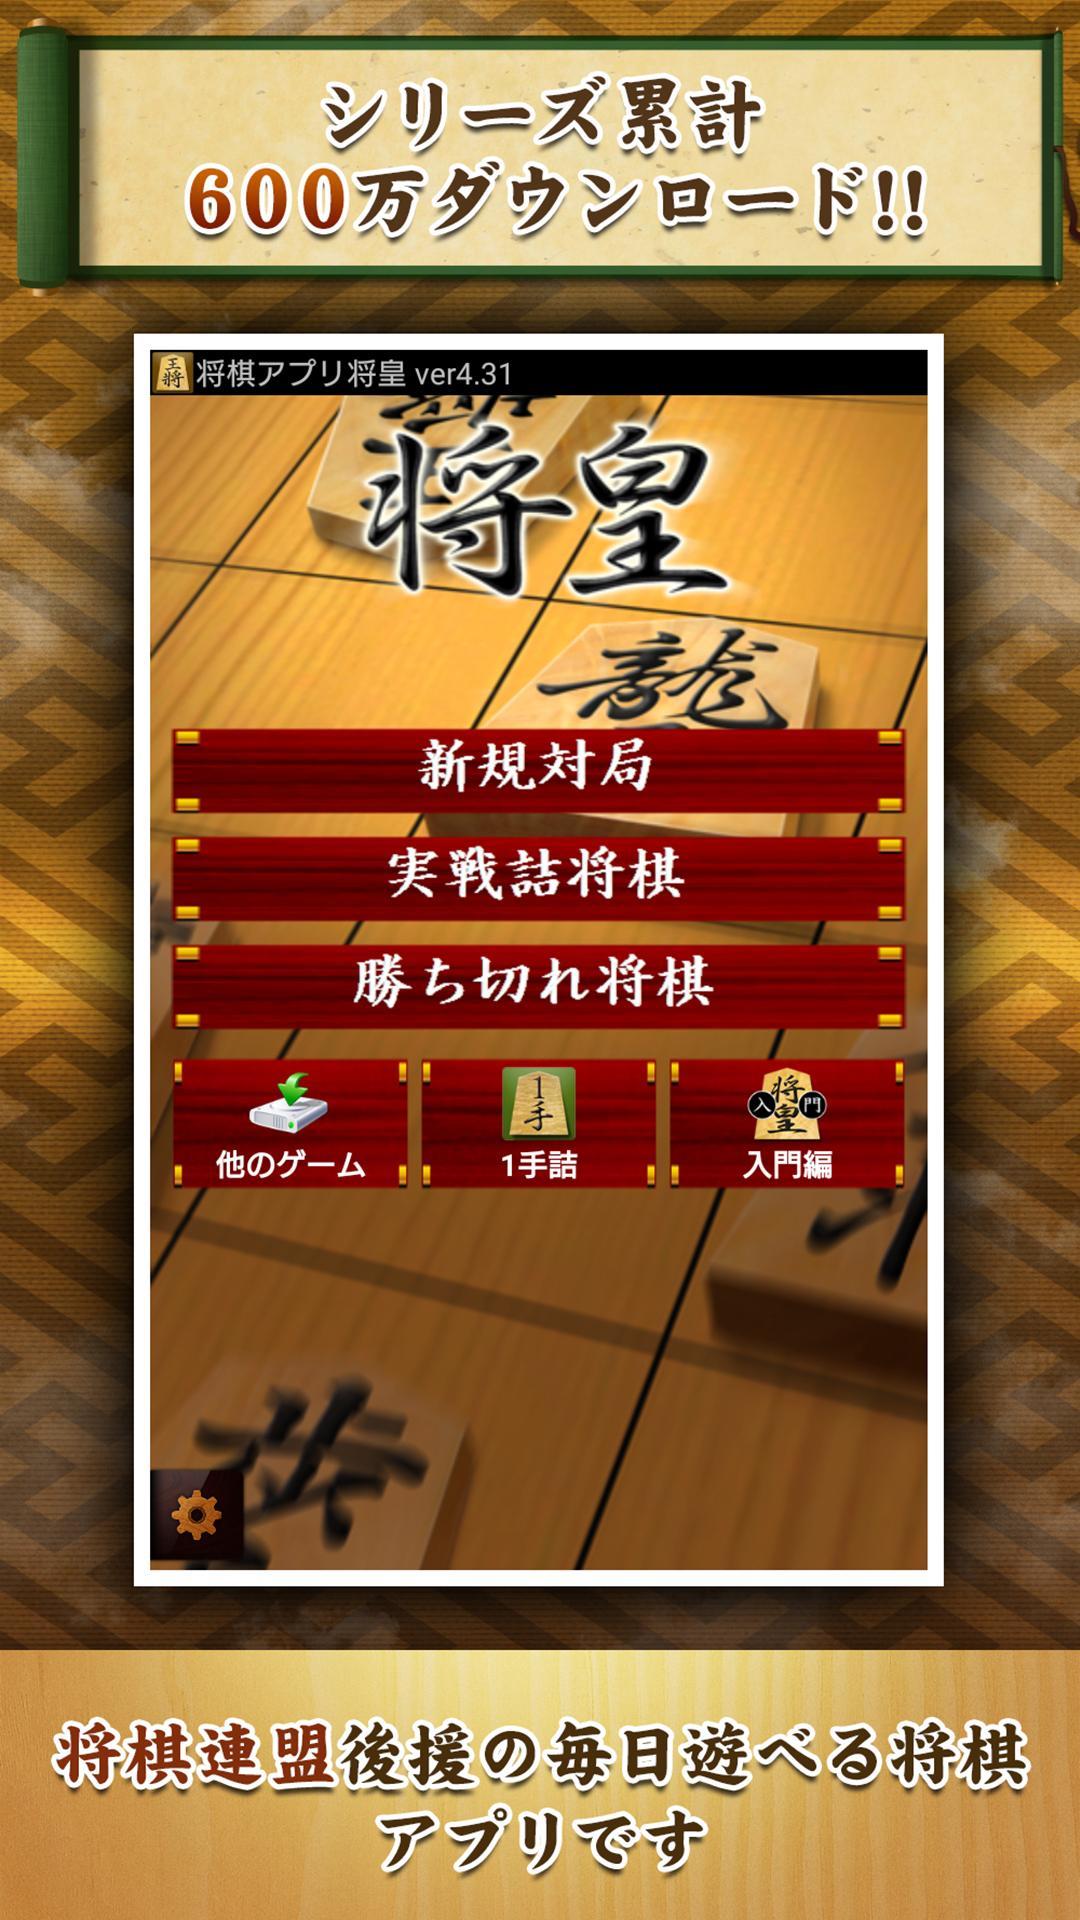 Screenshot 1 of Ứng dụng Shogi Shoou 6.5